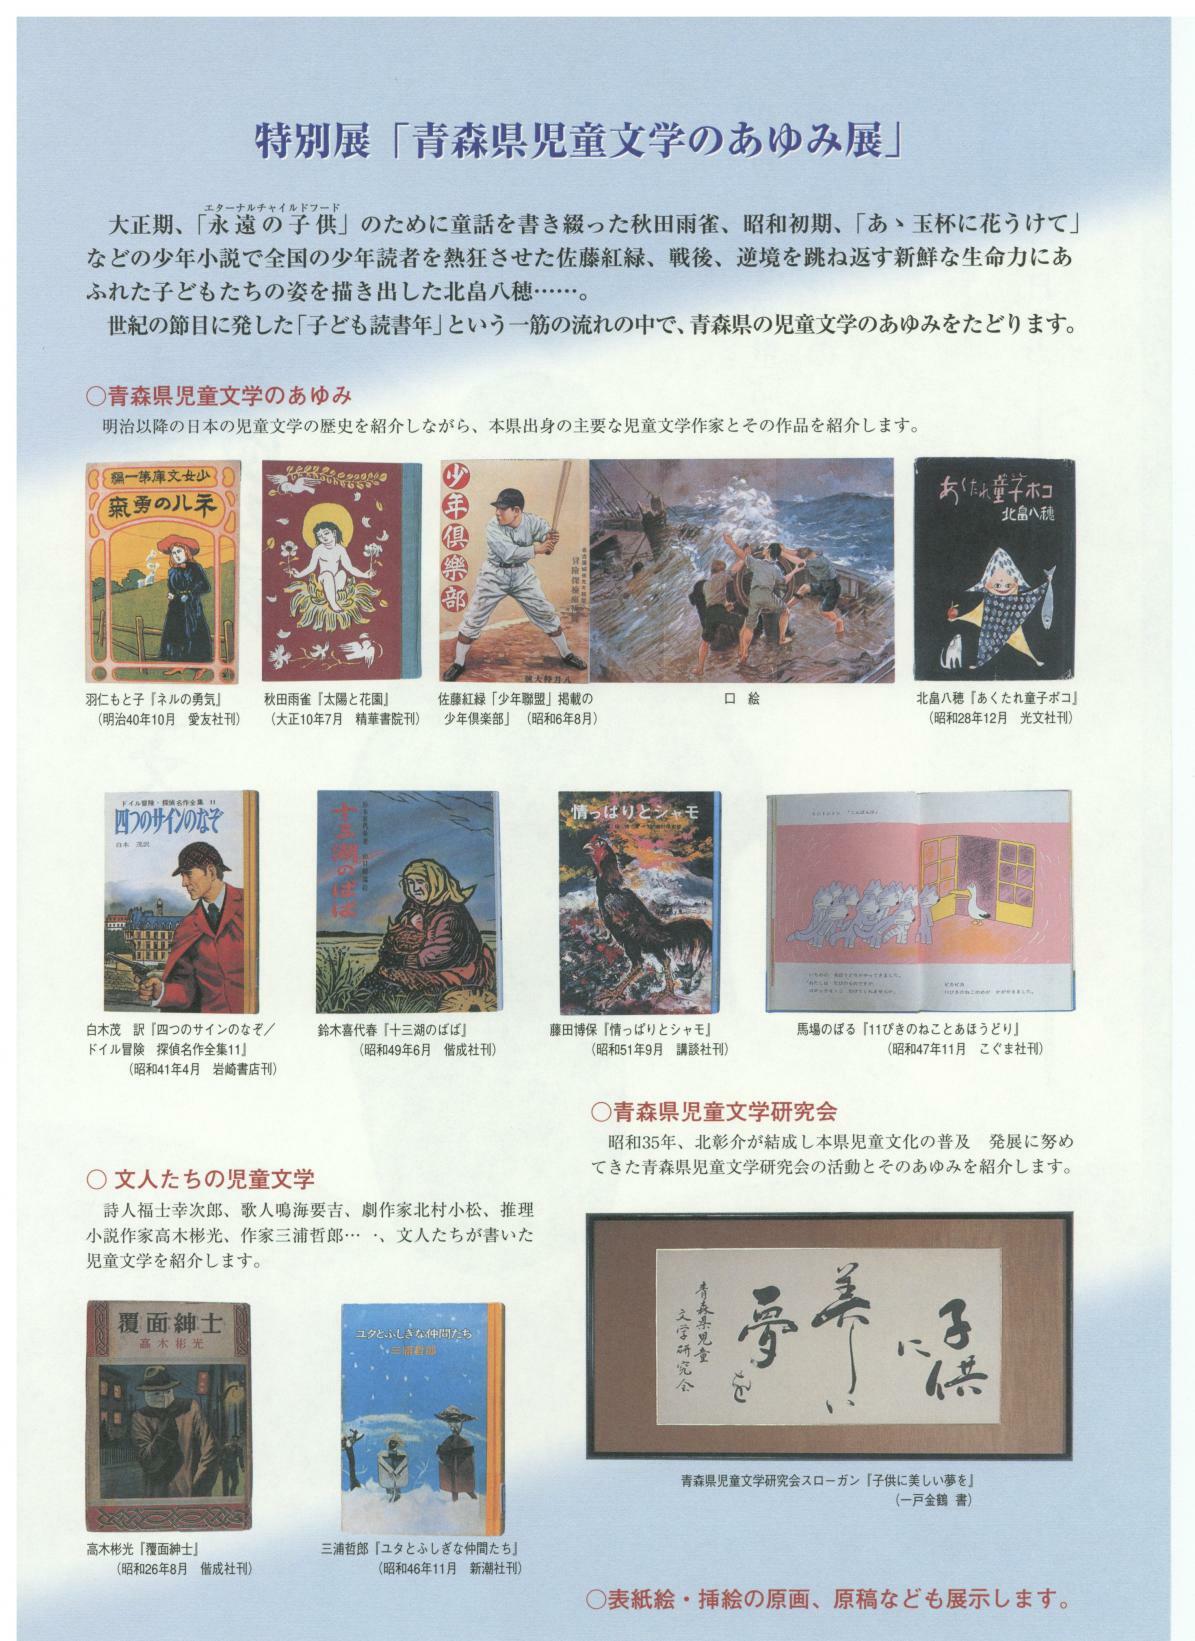 青森県児童文学のあゆみ展フライヤー裏面の画像